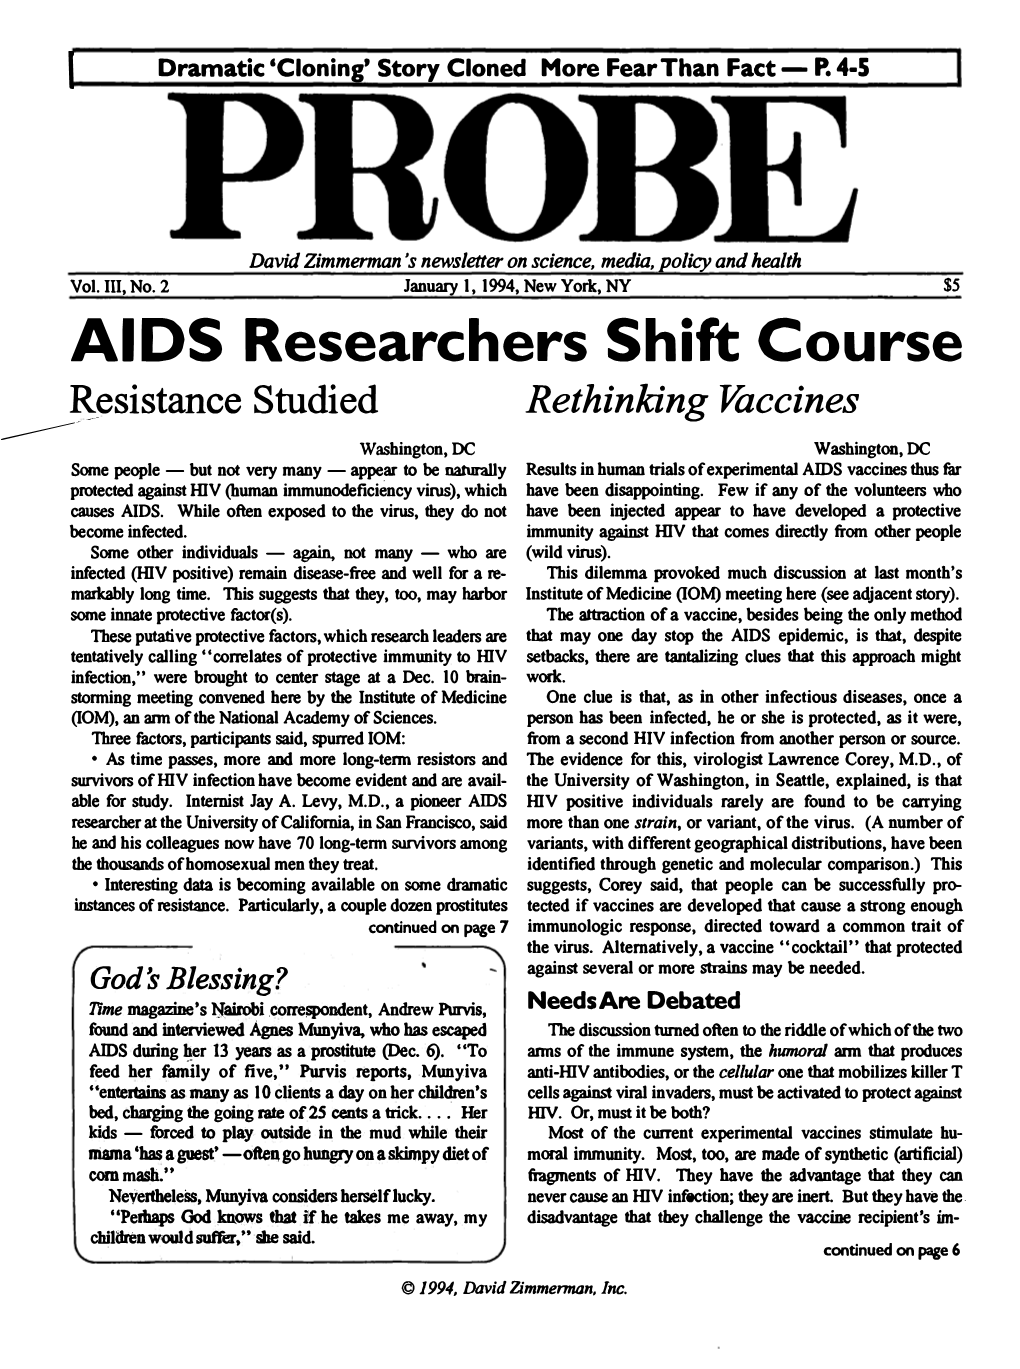 Probe Newsletter, January 1, 1994